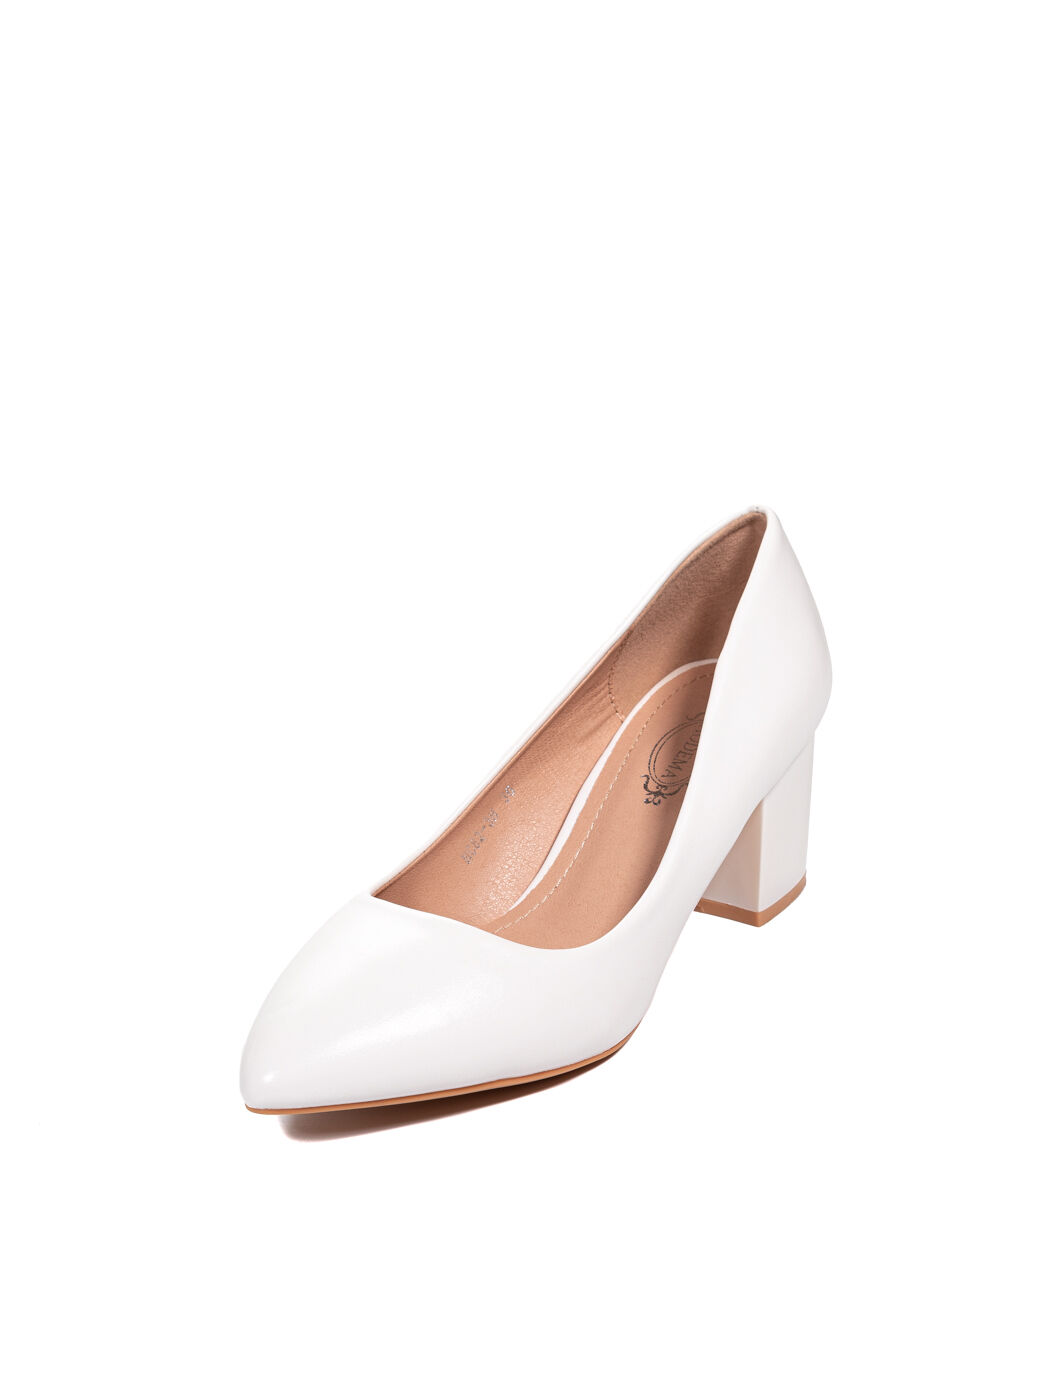 Туфли женские белые экокожа каблук устойчивый демисезон от производителя HM вид 0